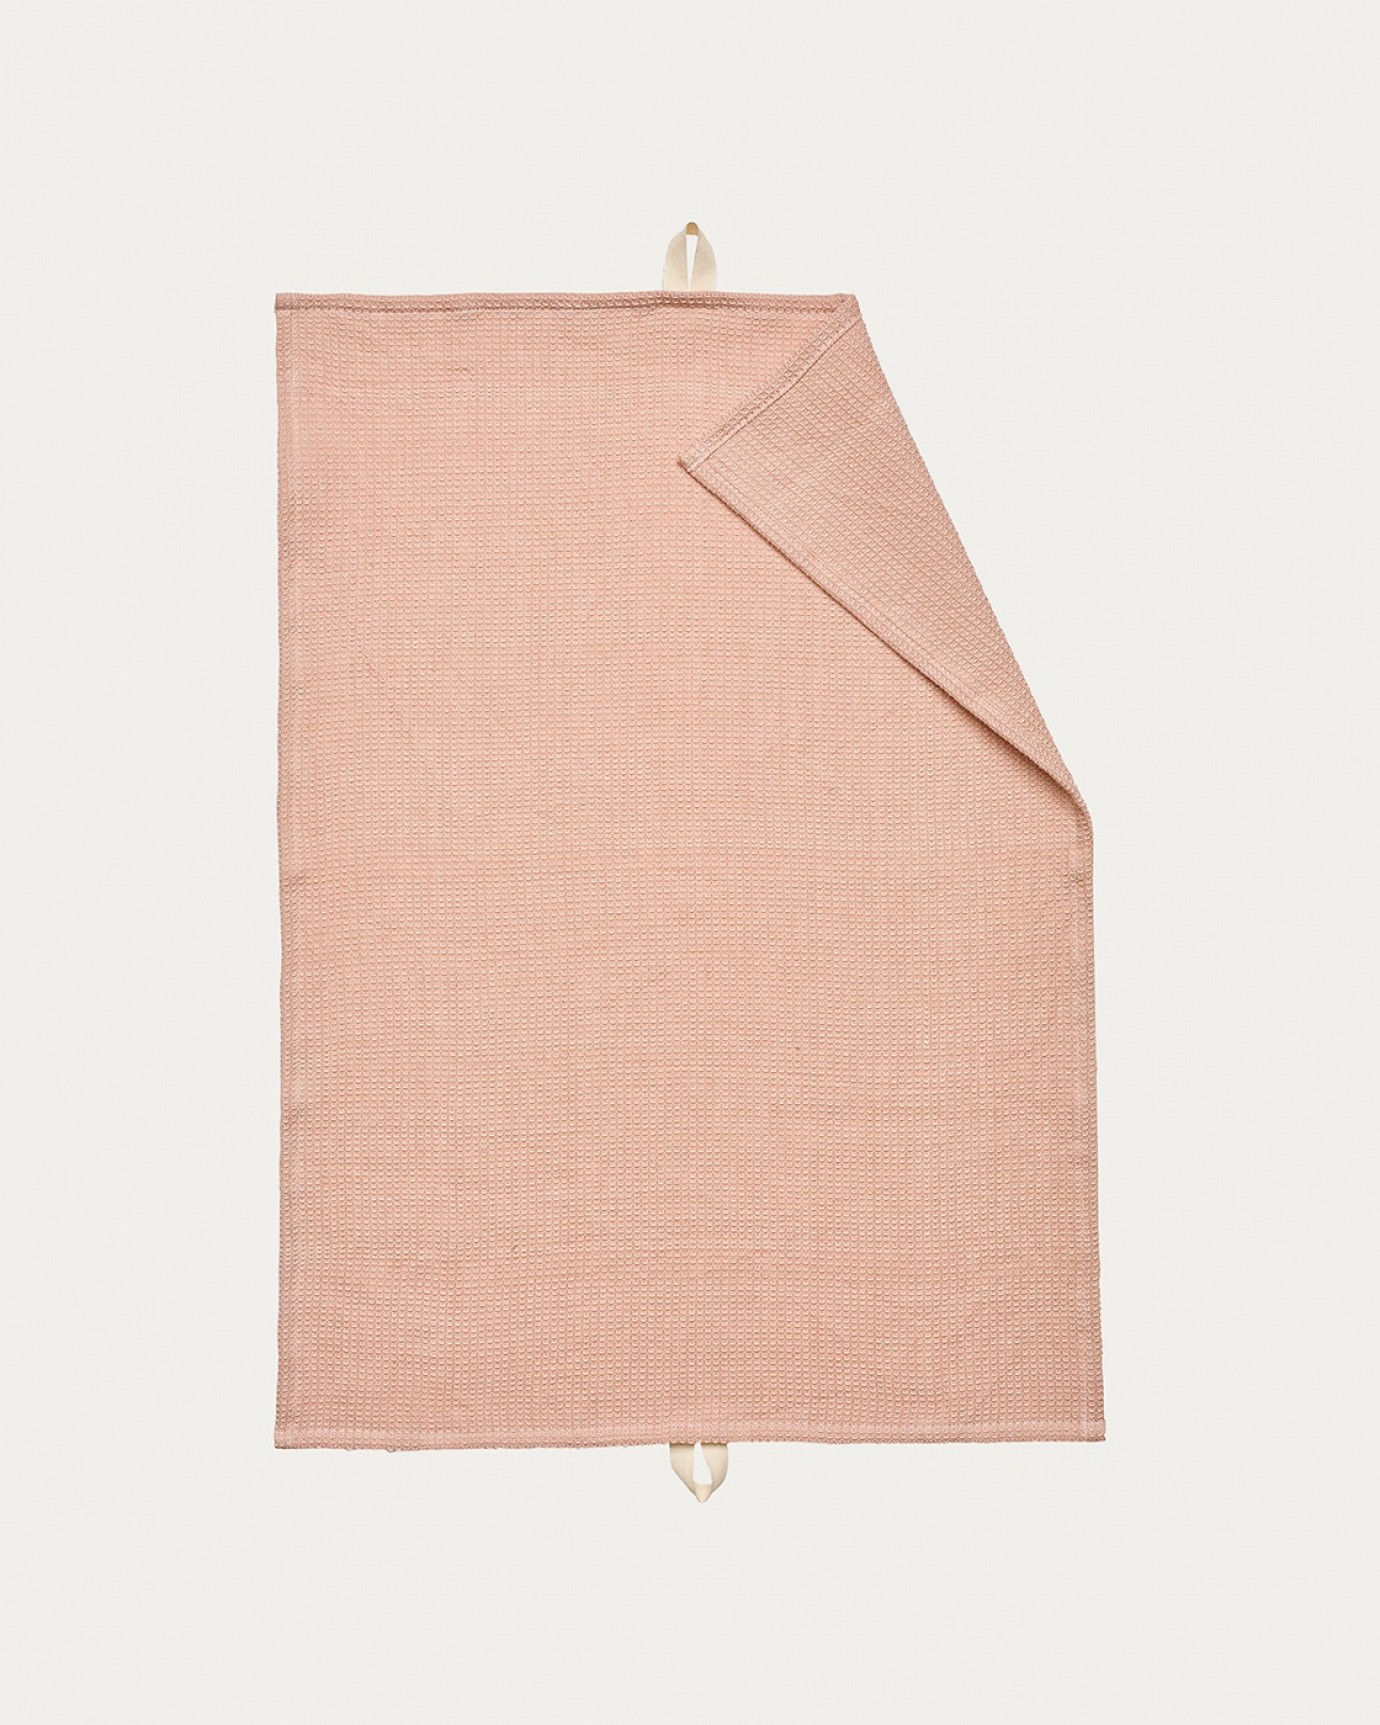 Produktbild dammig rosa AGNES kökshandduk av mjuk bomull i våfflad struktur från LINUM DESIGN. Storlek 50x70 cm.